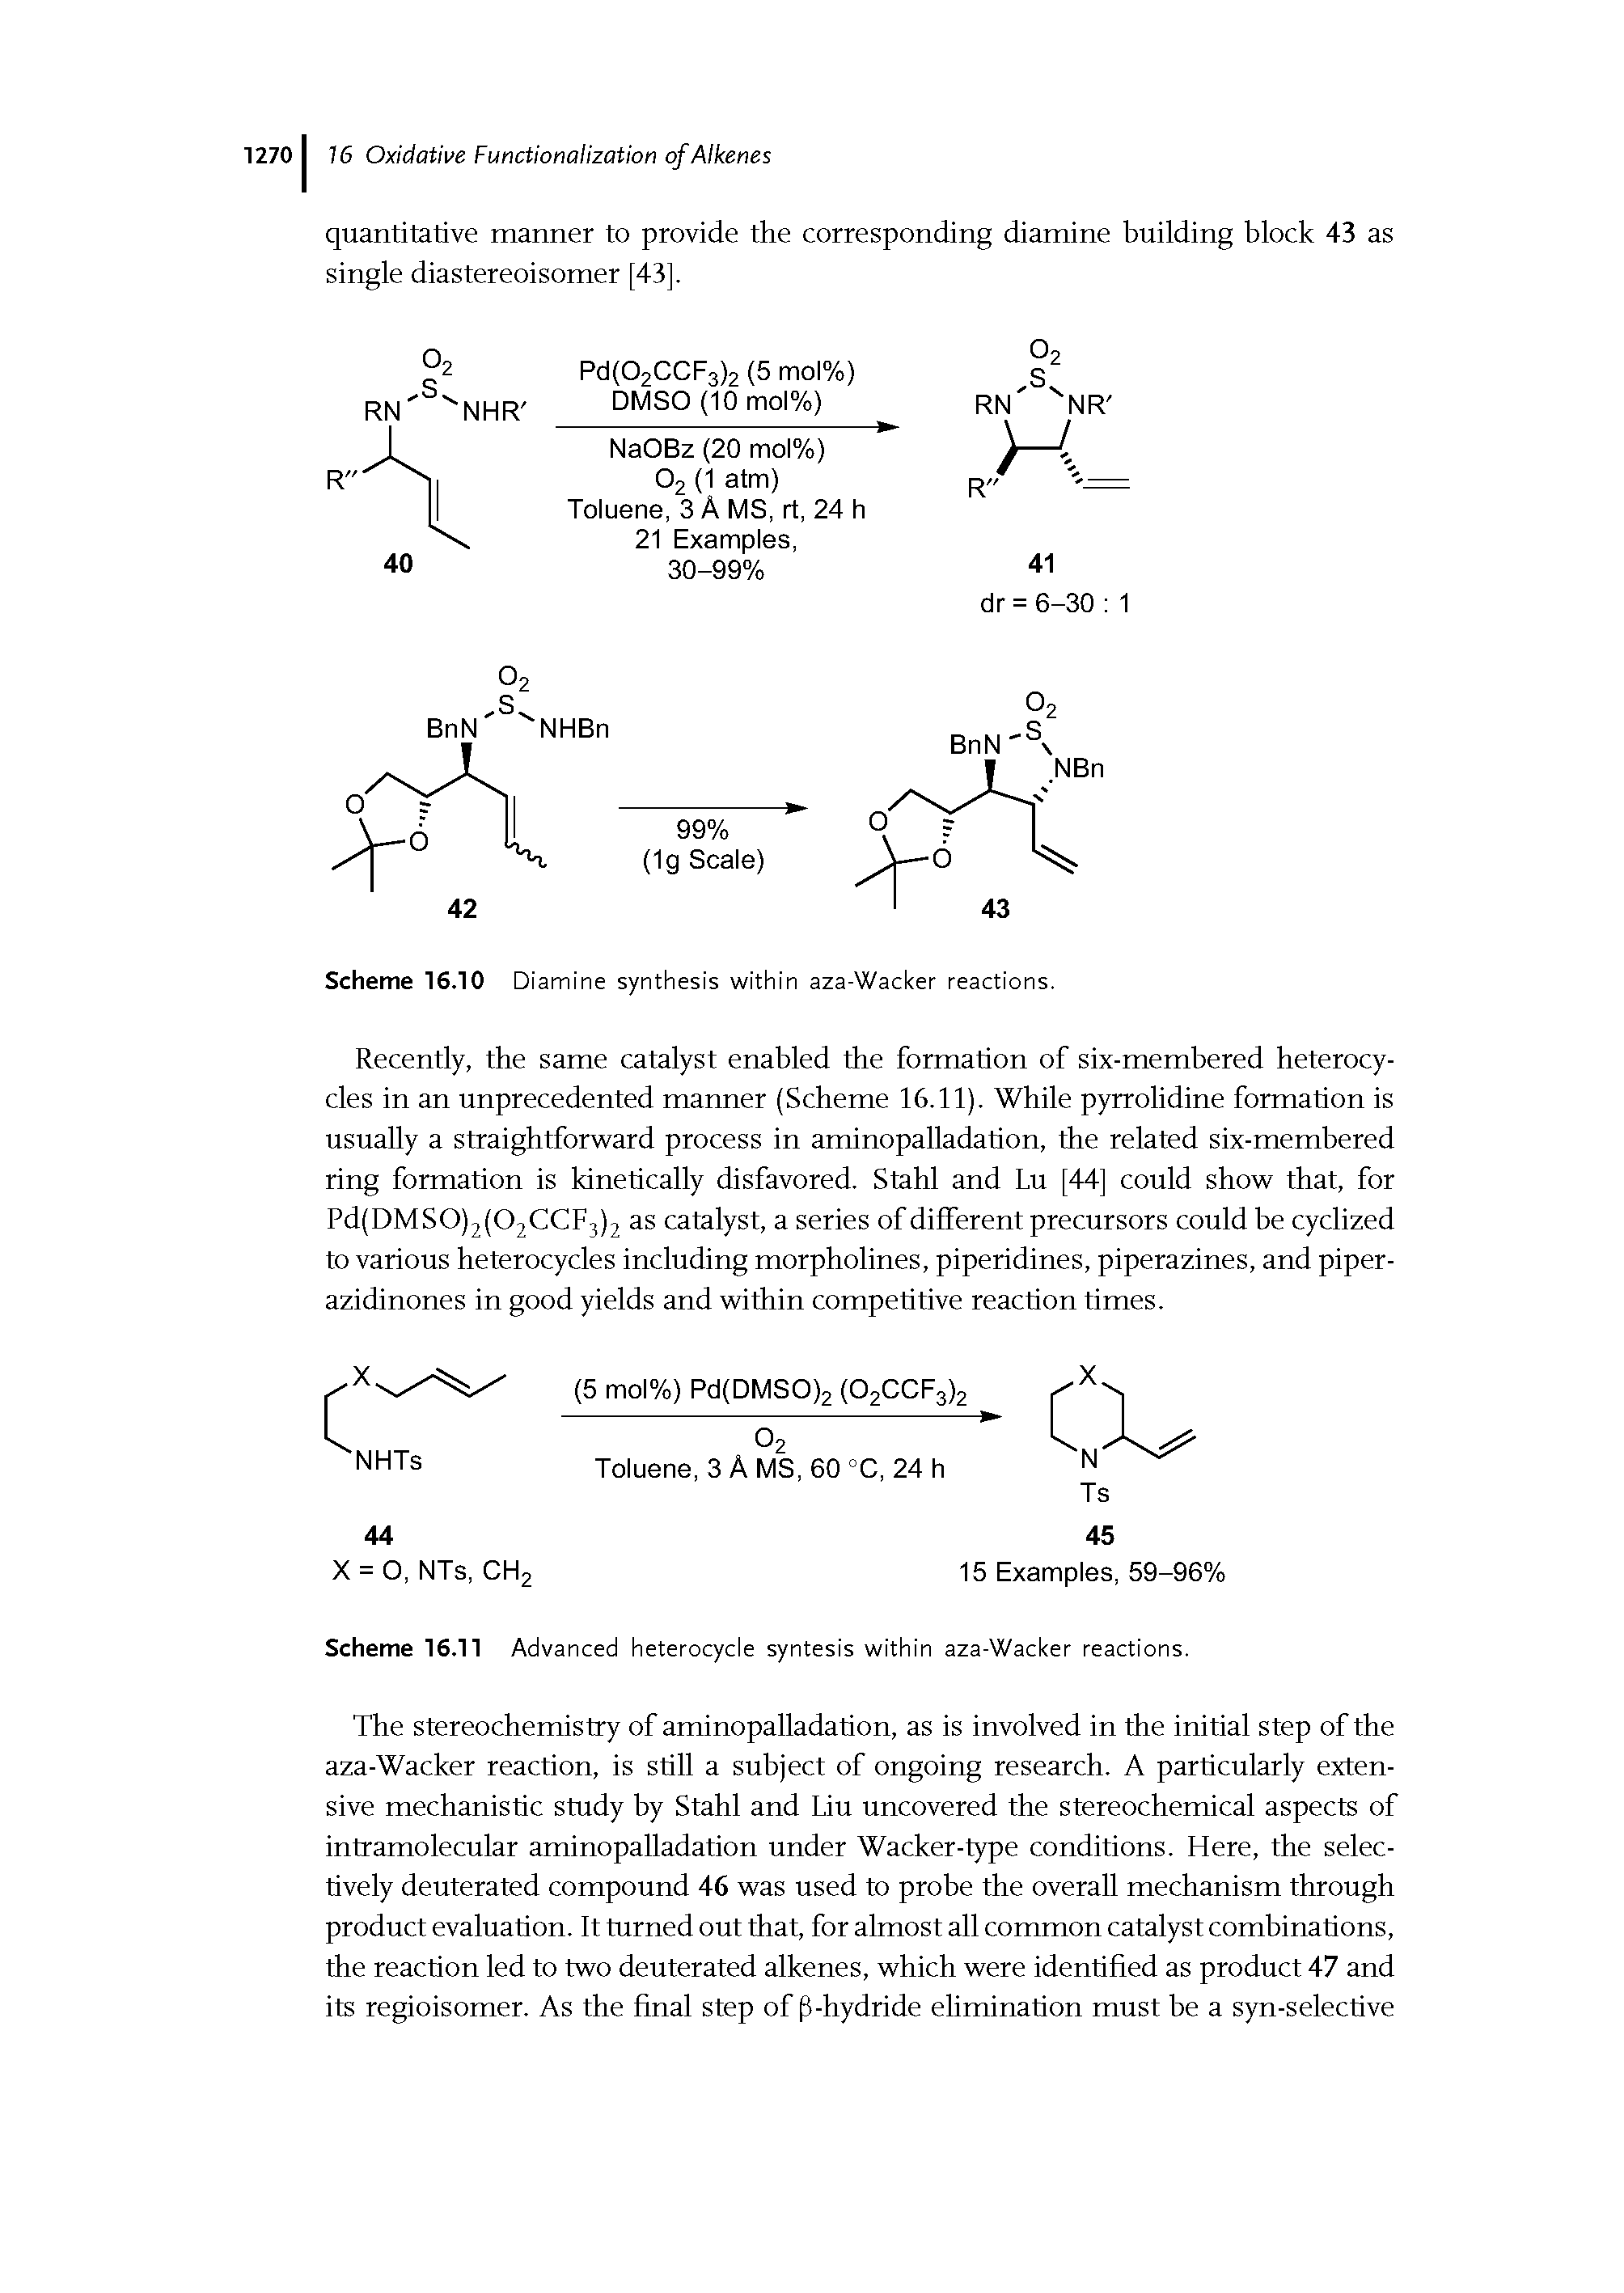 Scheme 16.10 Diamine synthesis within aza-Wacker reactions.